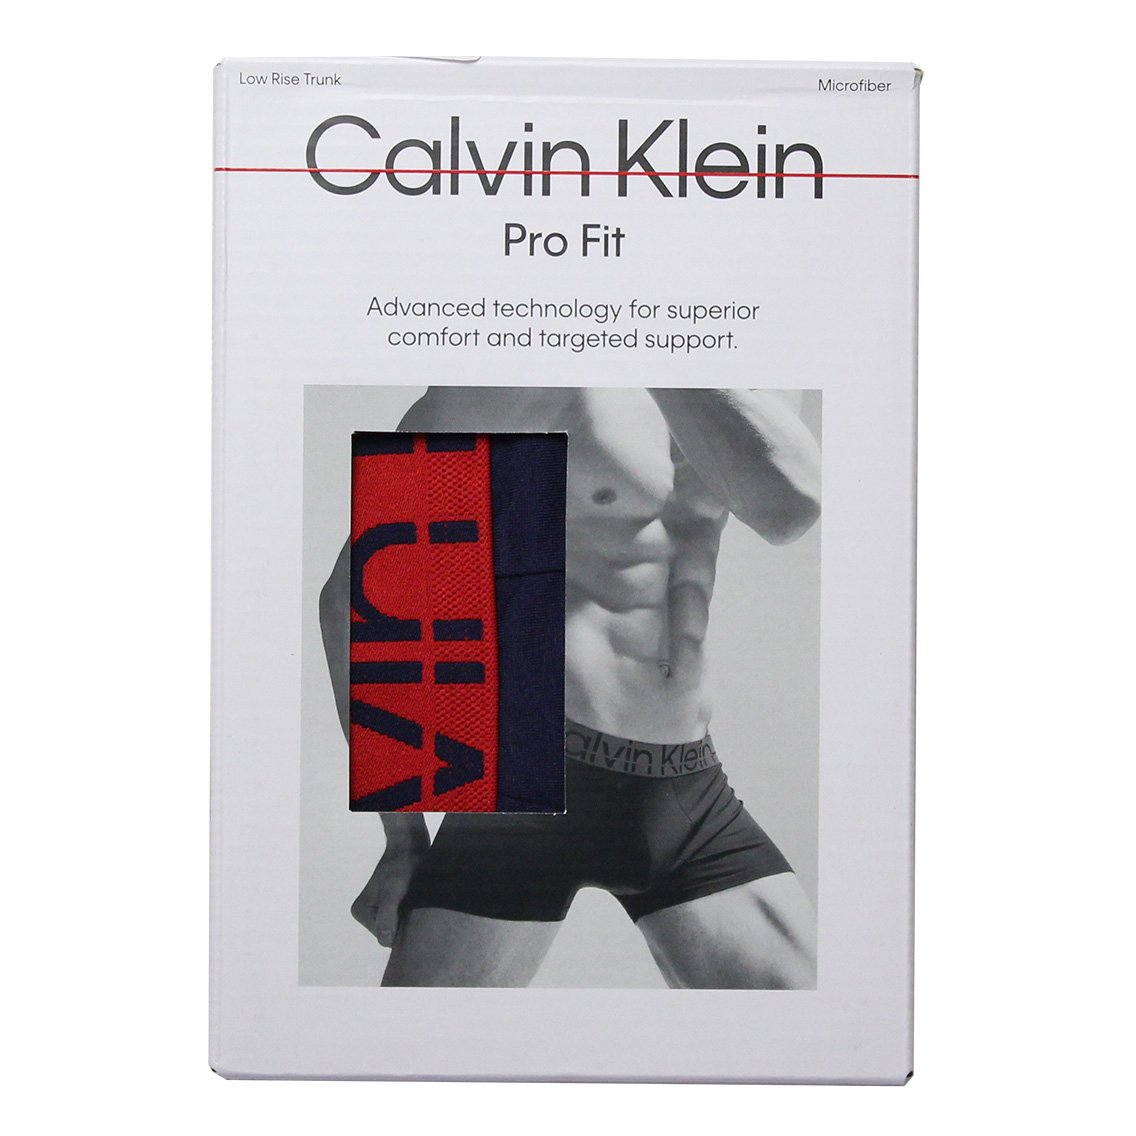 Calvin Klein(カルバンクライン)[NB3031-420]:ボクサーパンツ,男性下着,インナーの通販